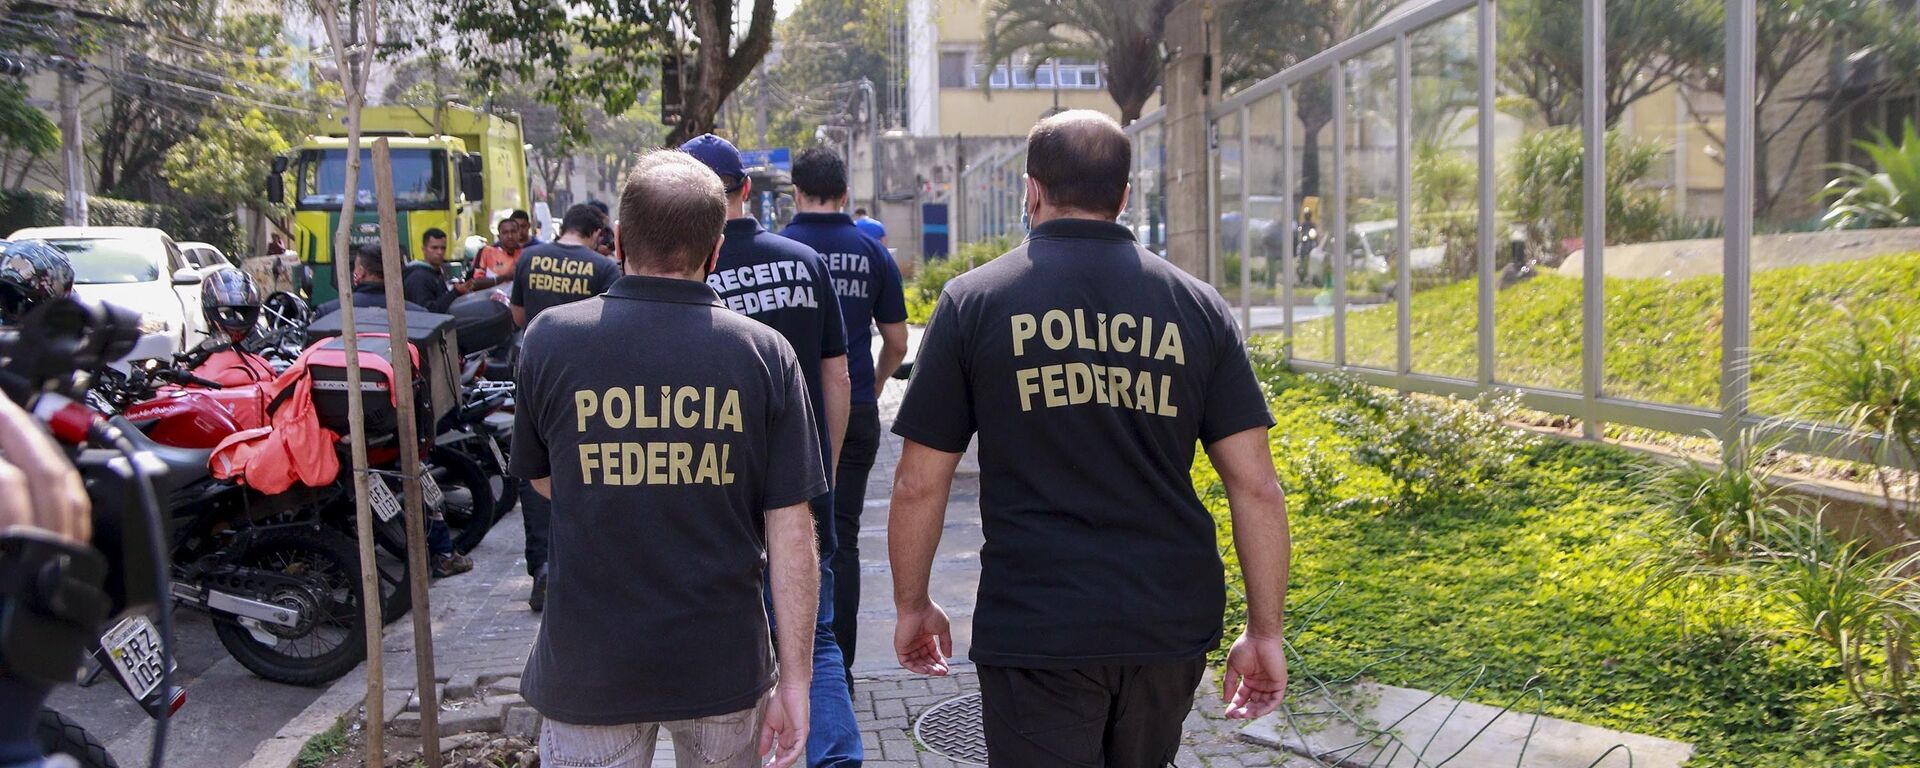 Polícia Federal faz buscas no escritório do advogado do ex-presidente Lula, Cristiano Zanin, no bairro Cerqueira César, na capital paulista - Sputnik Brasil, 1920, 09.09.2020